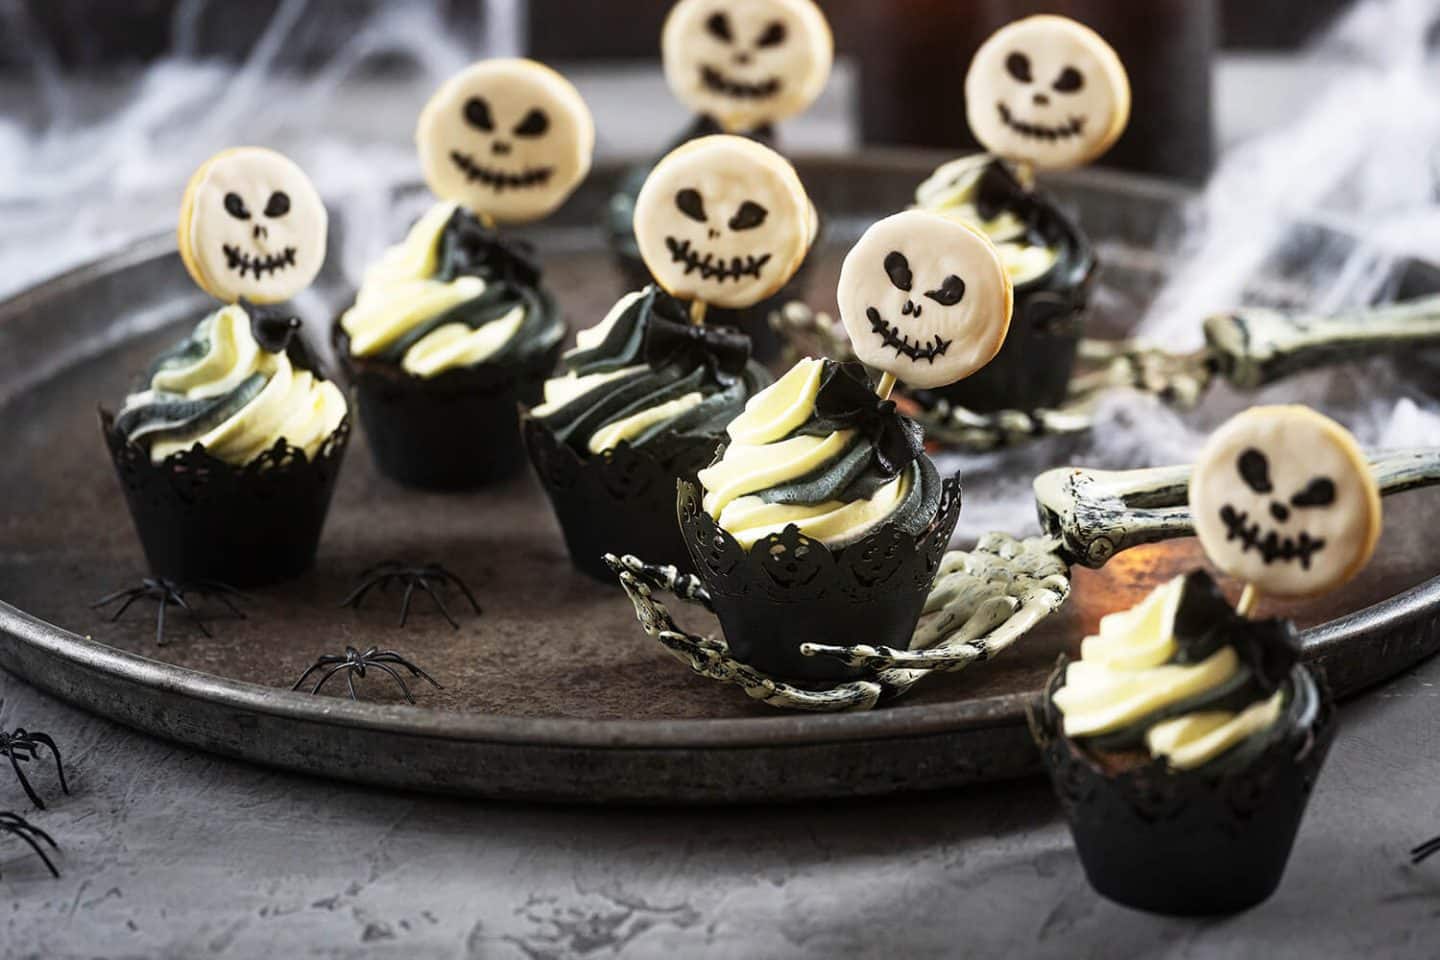 Einfache Halloween Cupcakes für eure Halloween Party